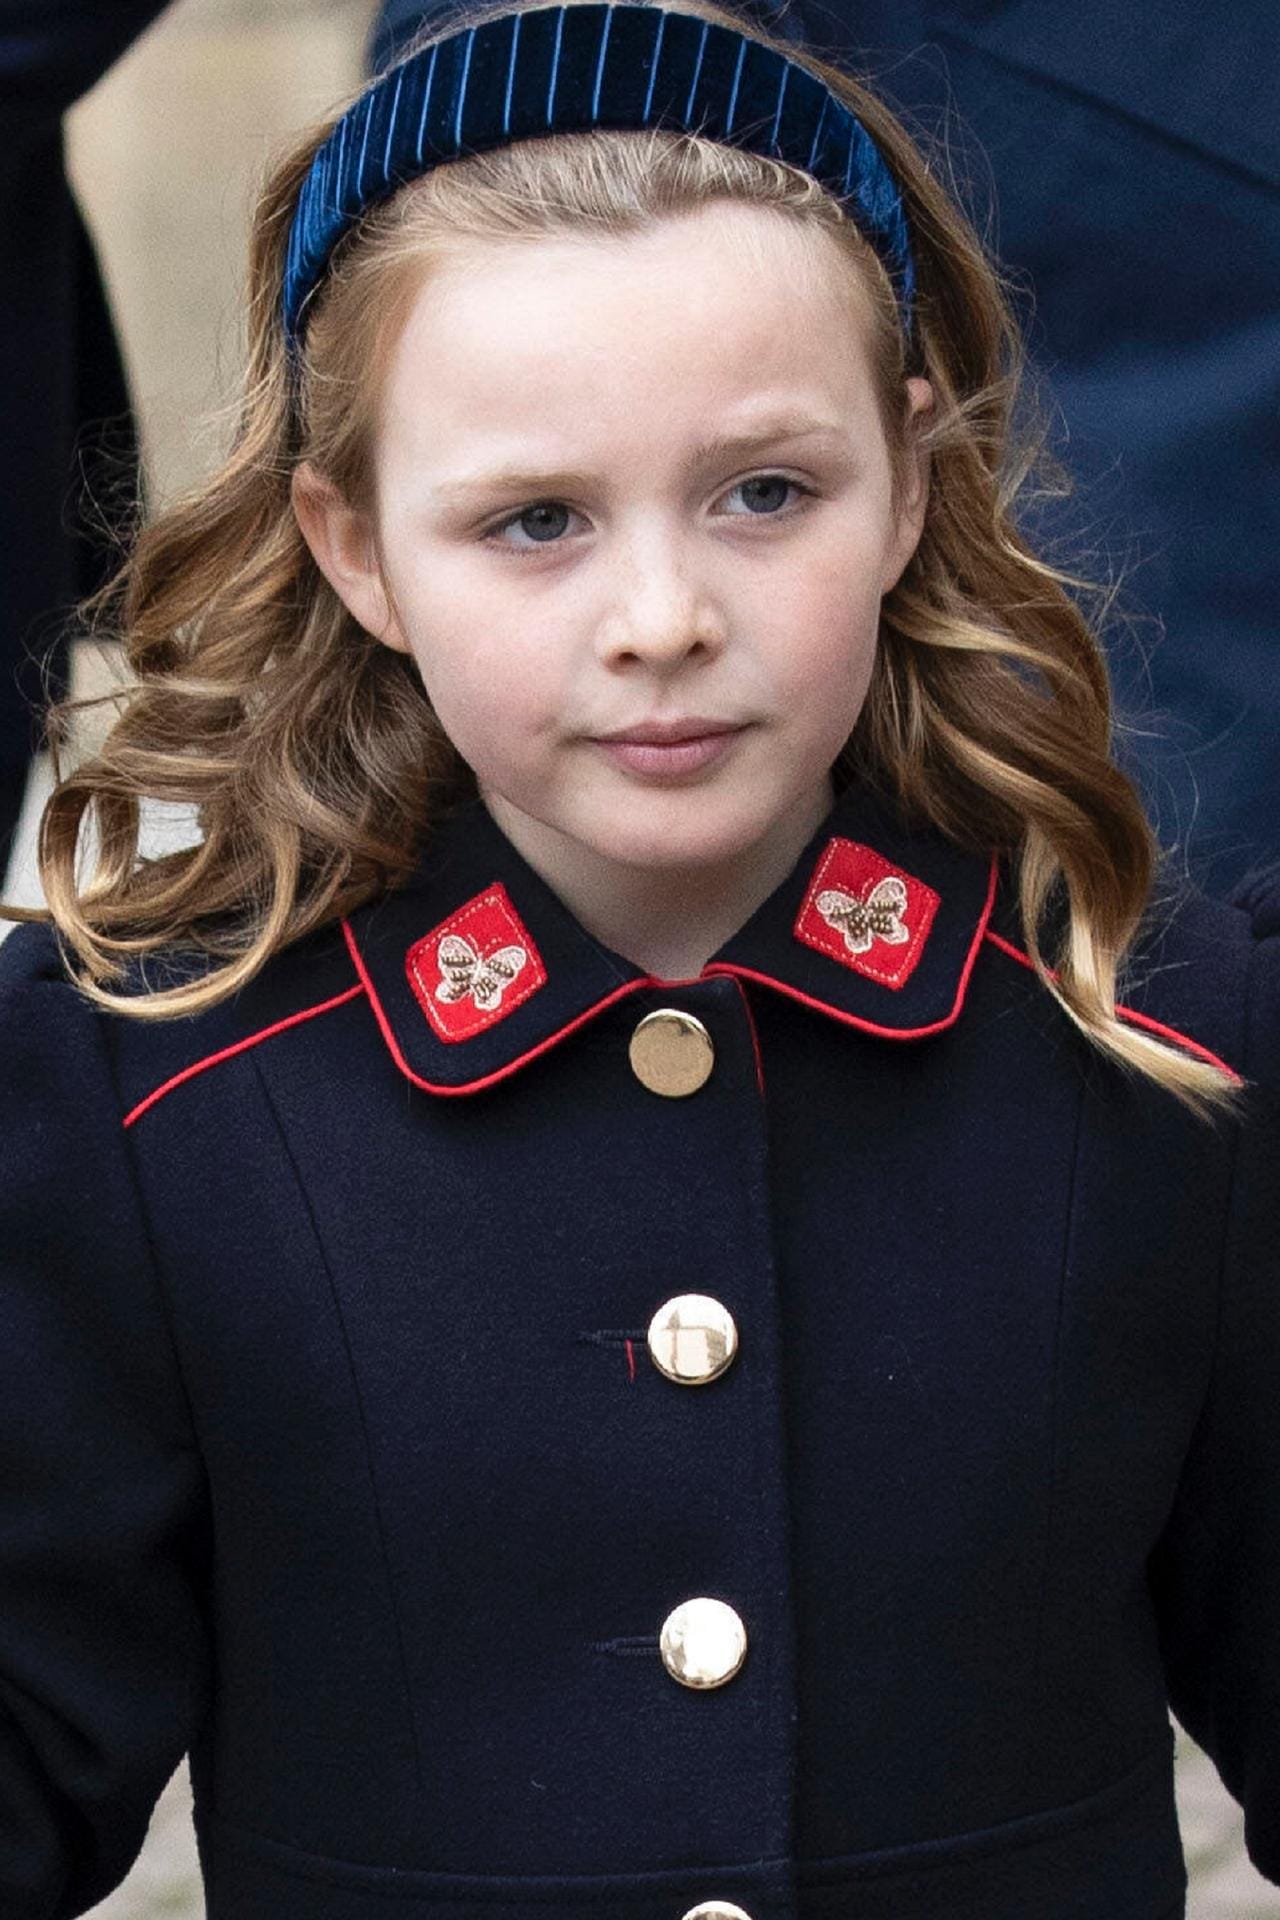 Prinzessin Mia Grace Tindall (geboren 2014): Sie ist die älteste Tochter von Prinzessin Zara Tindall